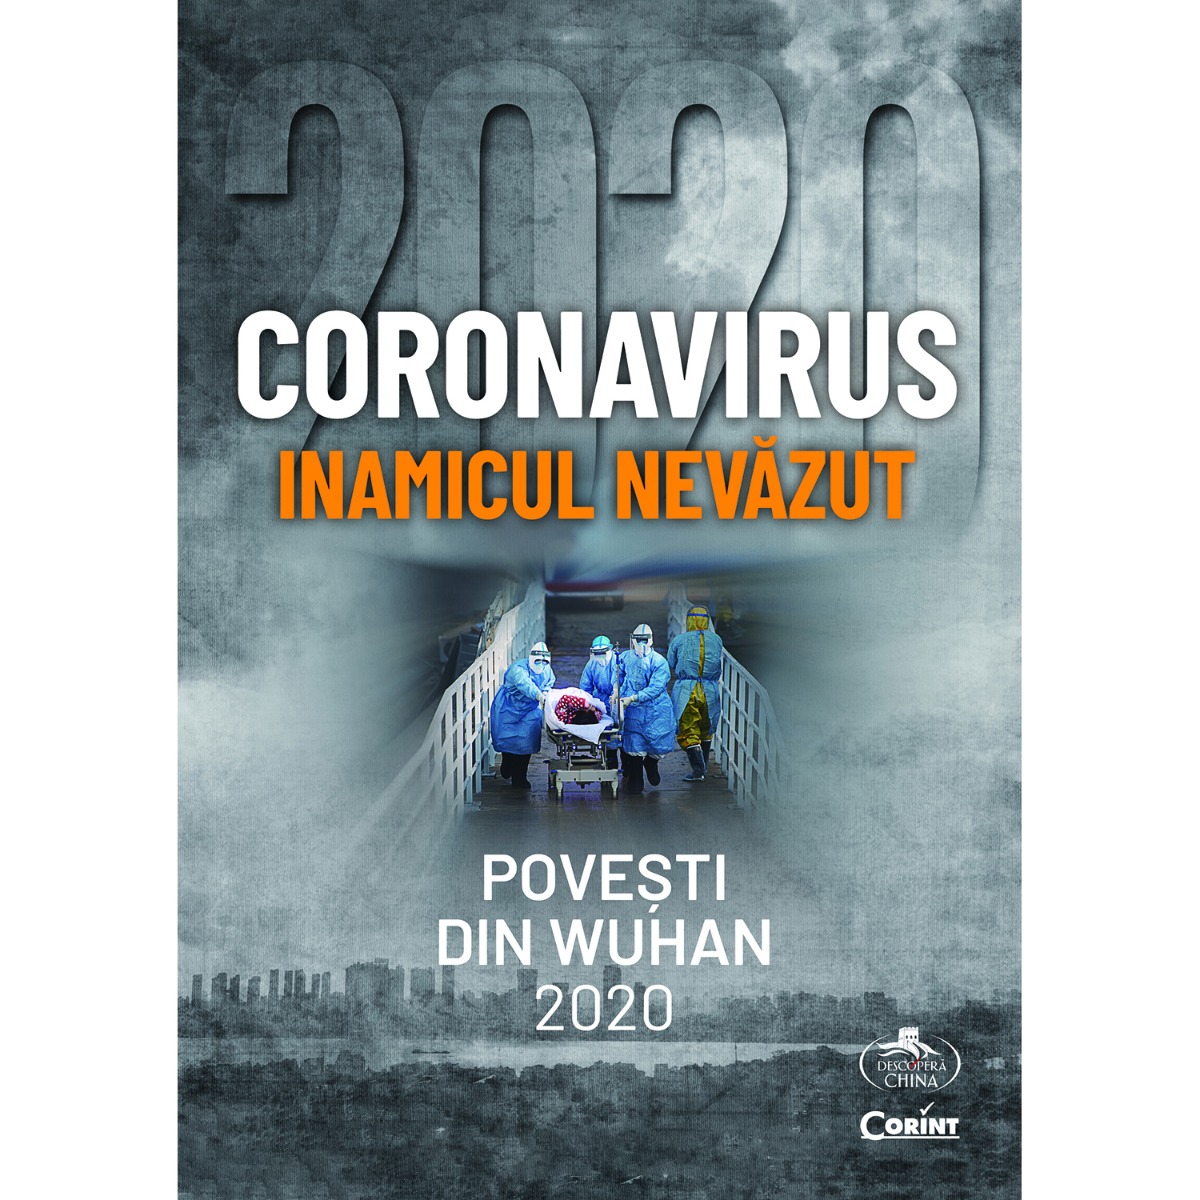 Coronavirus, Inamicul nevazut, Povesti din Wuhan 2020